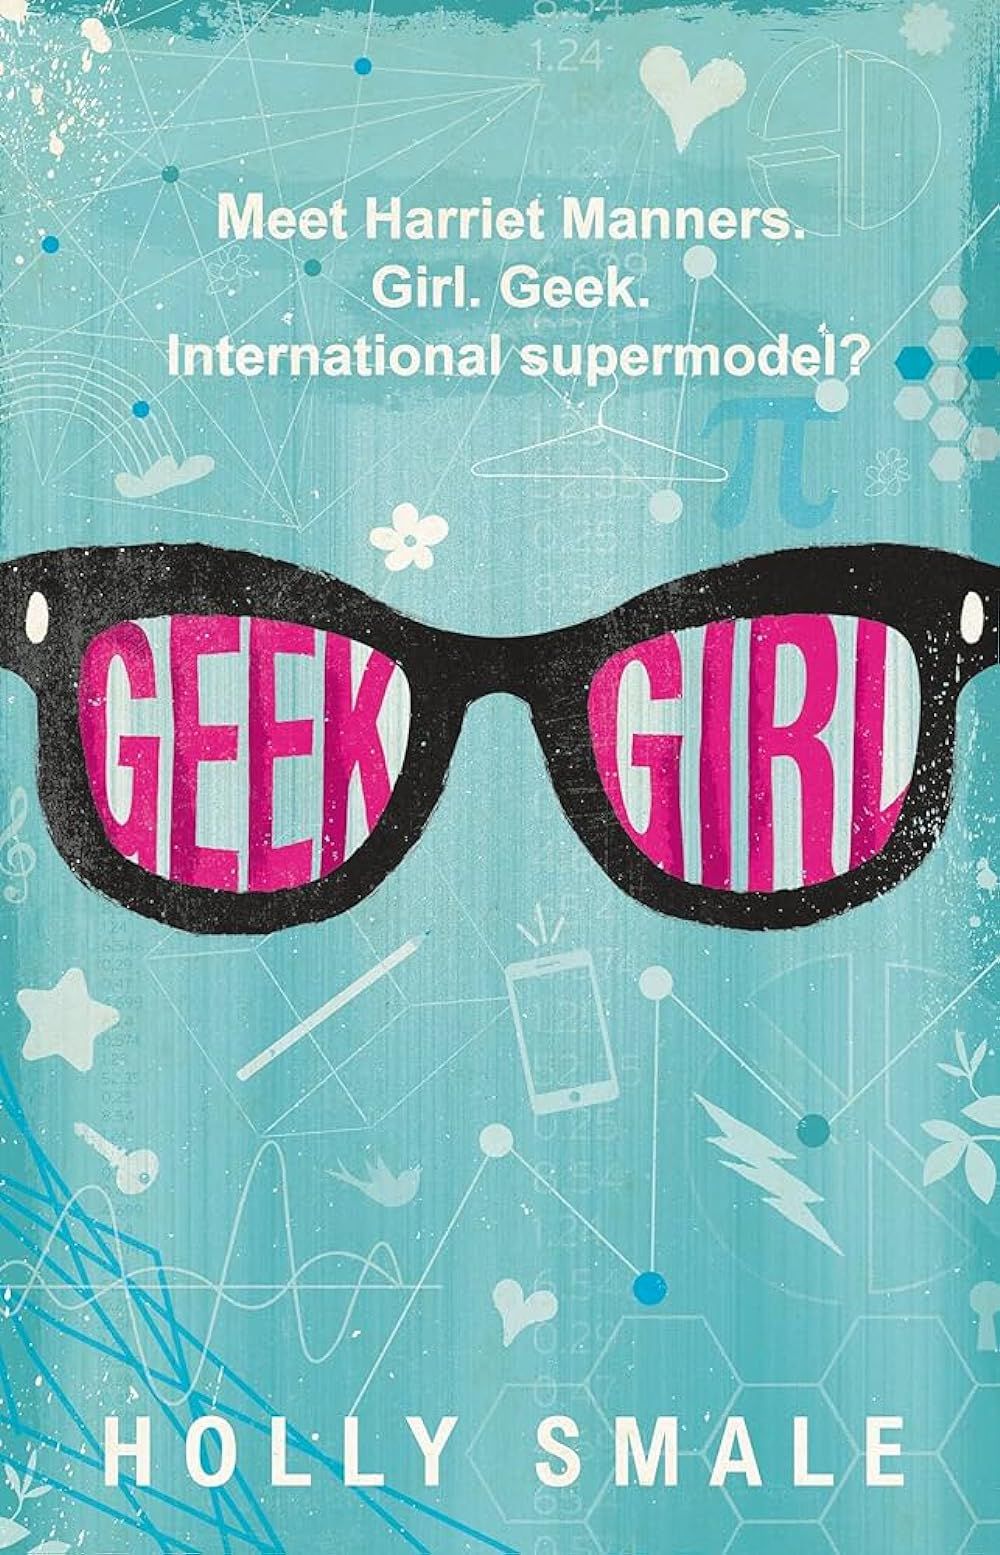 couverture de l'adaptation de la fille geek